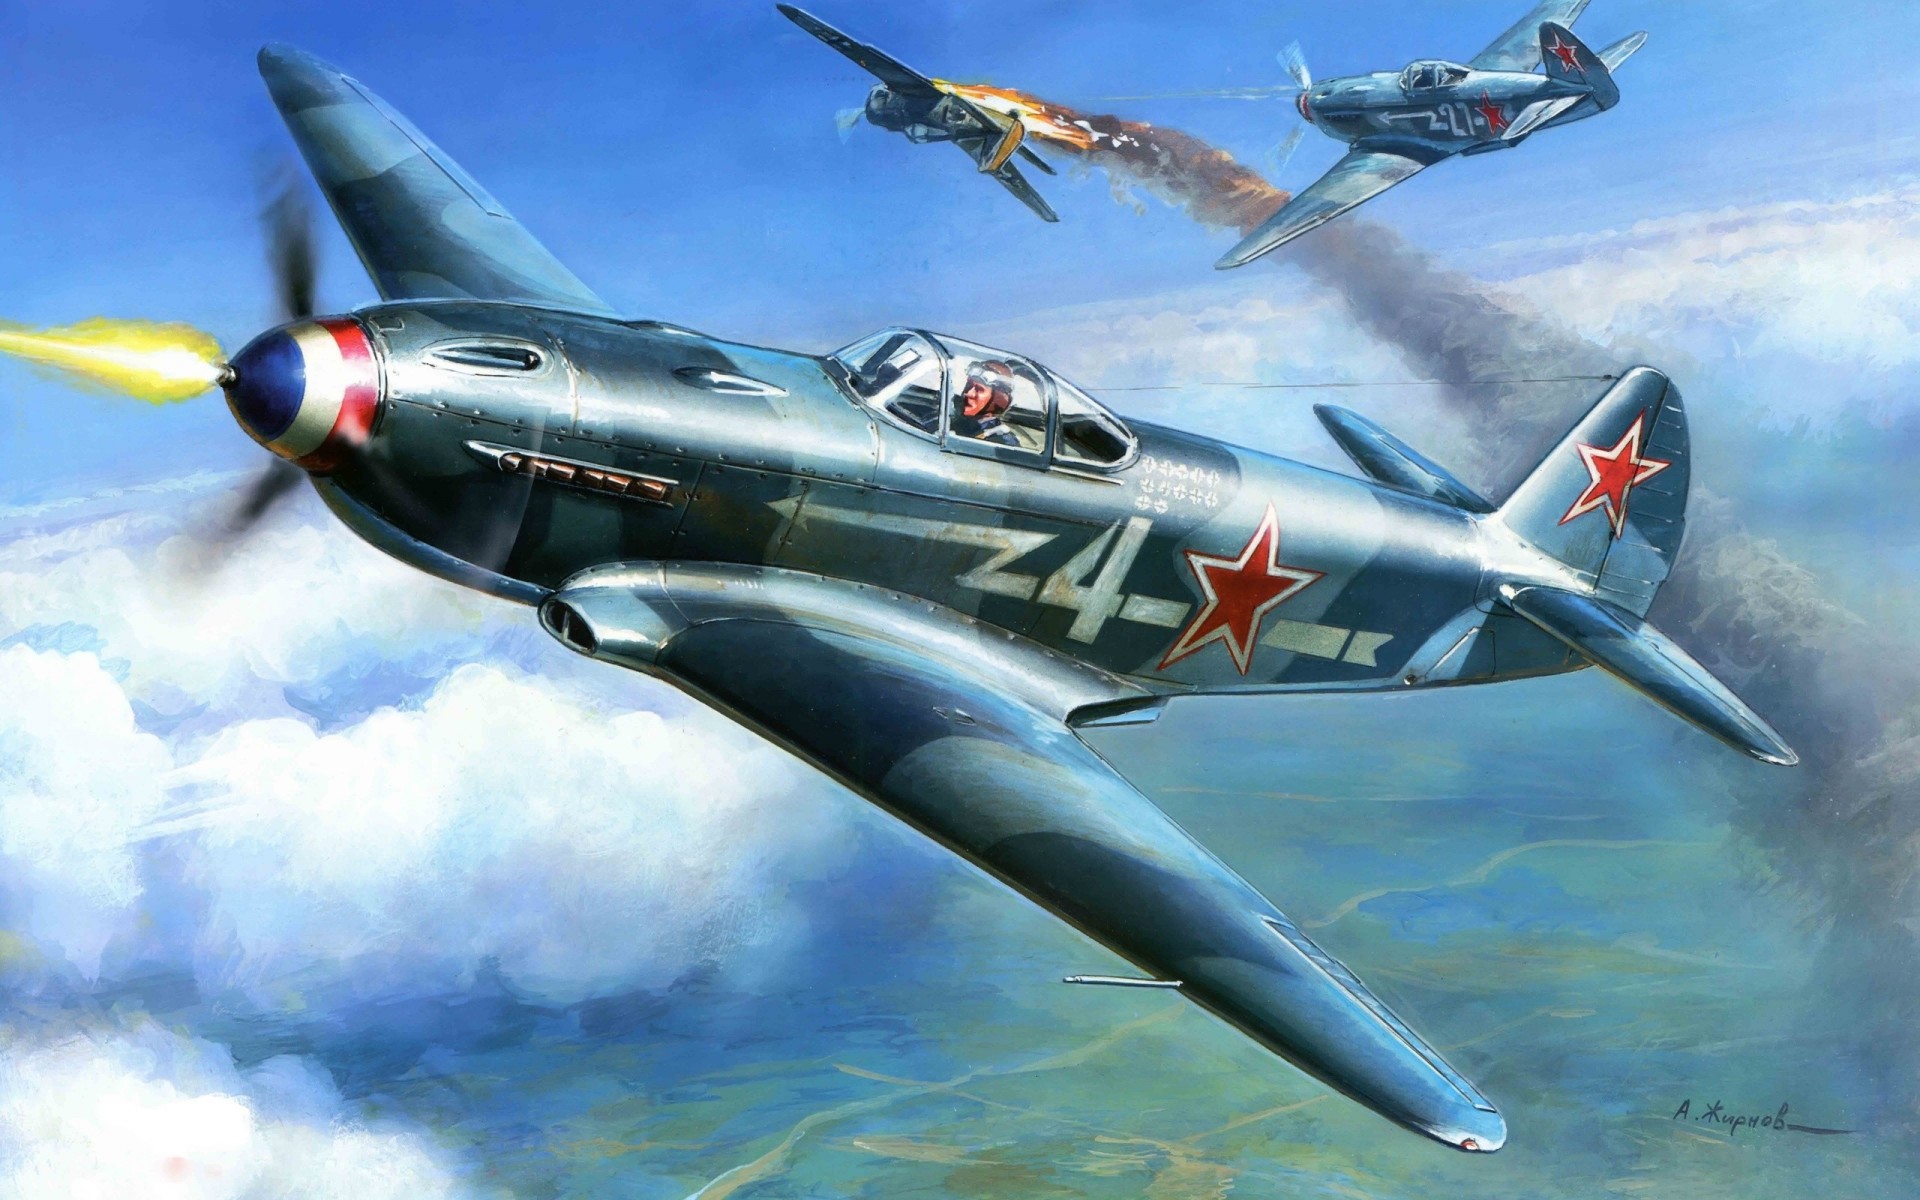 monomoteur avion verts de première ligne soviétique